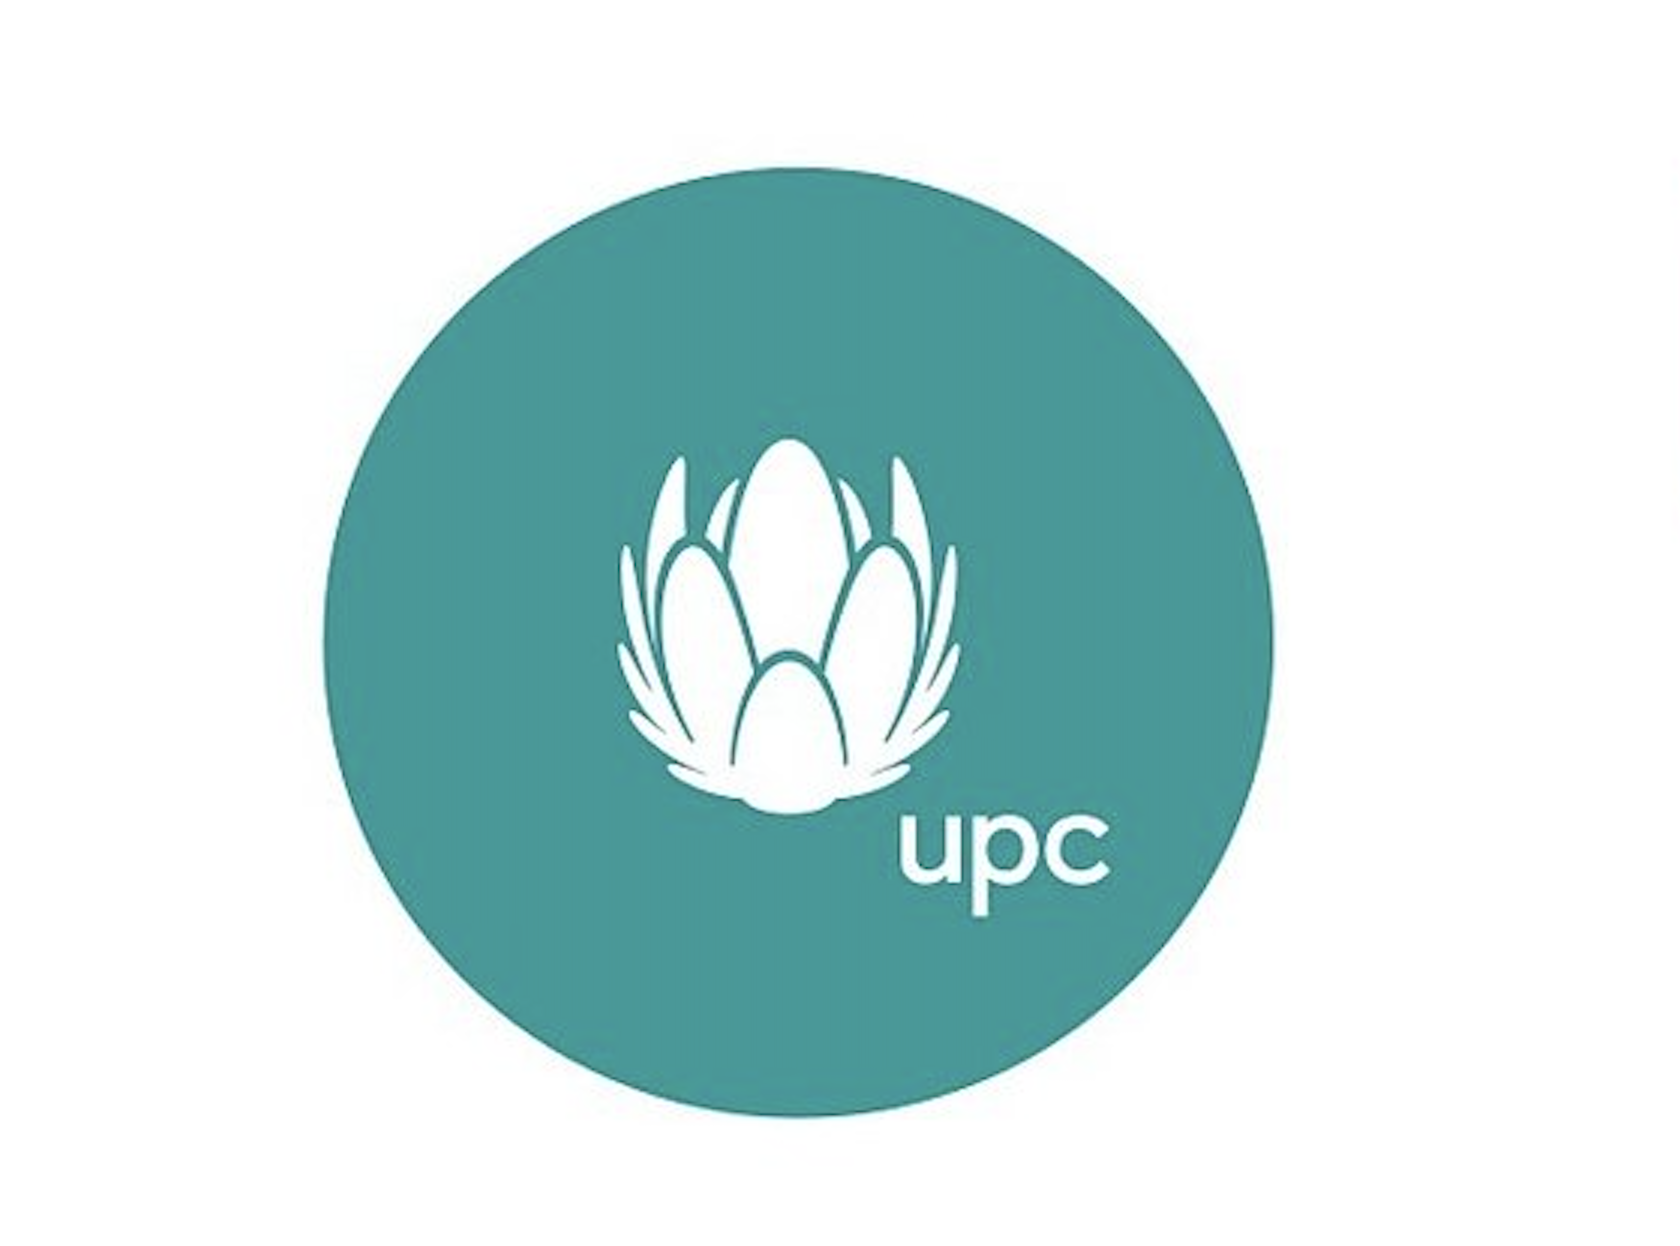 Drugi Kwartał 2021 r. potwierdza pozycję UPC Polska jako najszybszego ogólnopolskiego dostawcy internetu i umacnia pozycję UPC jako w pełni zintegrowanego operatora